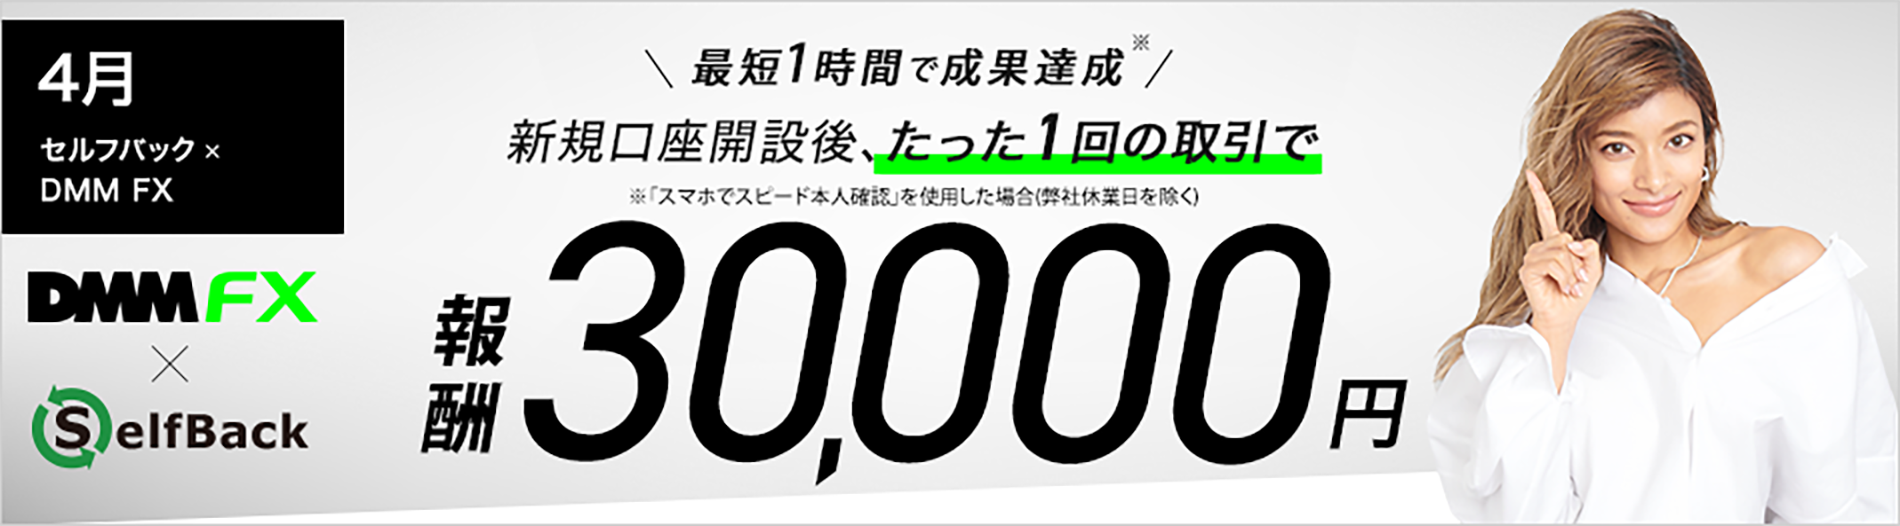 4月 セルフバック×DMM FX 新規FX口座開設と、たった１回取引で成果報酬30,000円